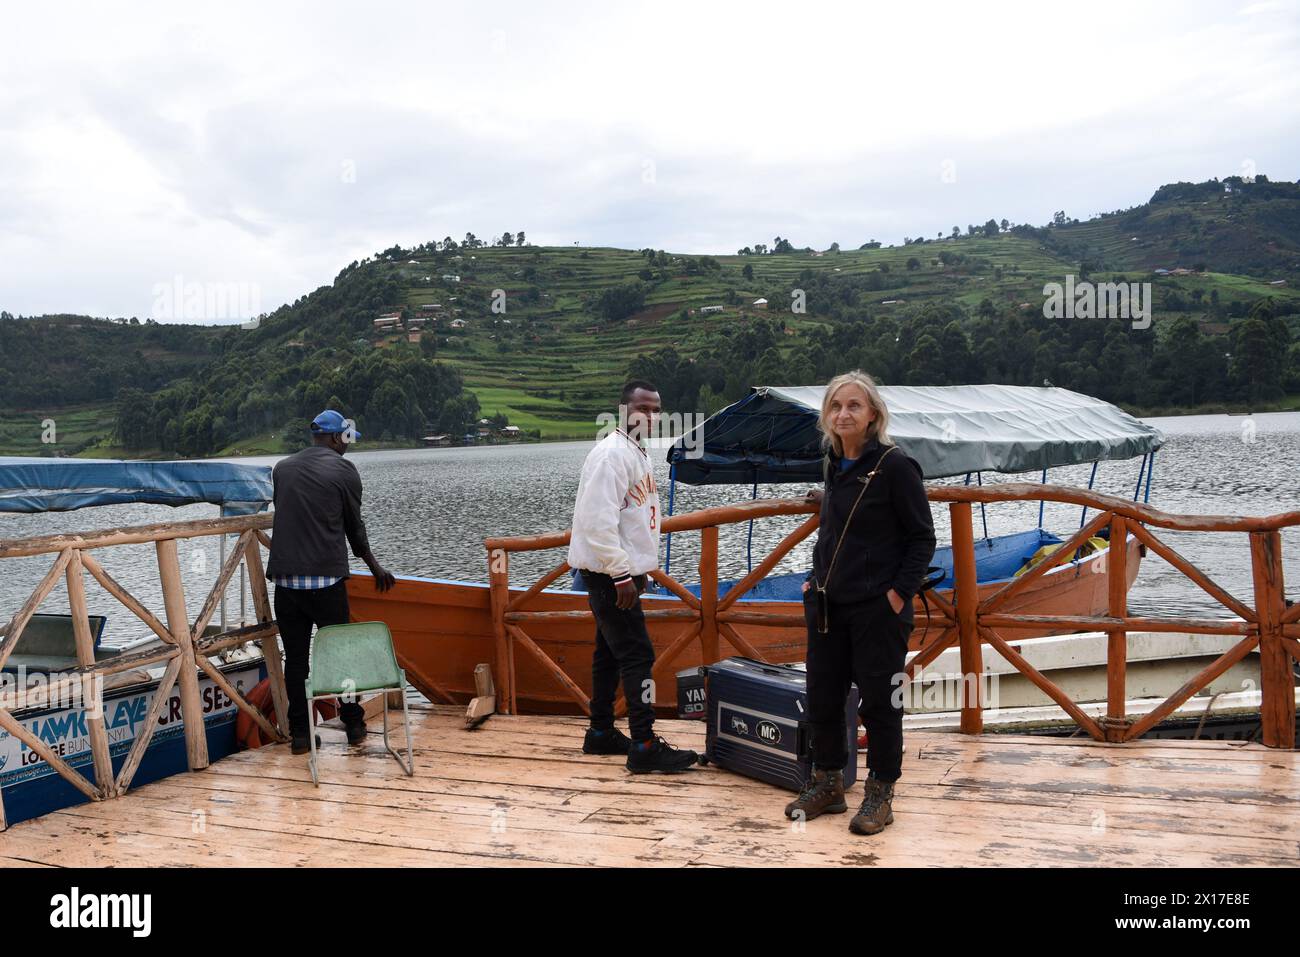 Ein eifriger europäischer Tourist kommt am ruhigen Pier ihres Hotels am See an, umgeben von der ungezähmten Schönheit des Bunyonyi-Sees in Uganda. Umgeben von Stockfoto